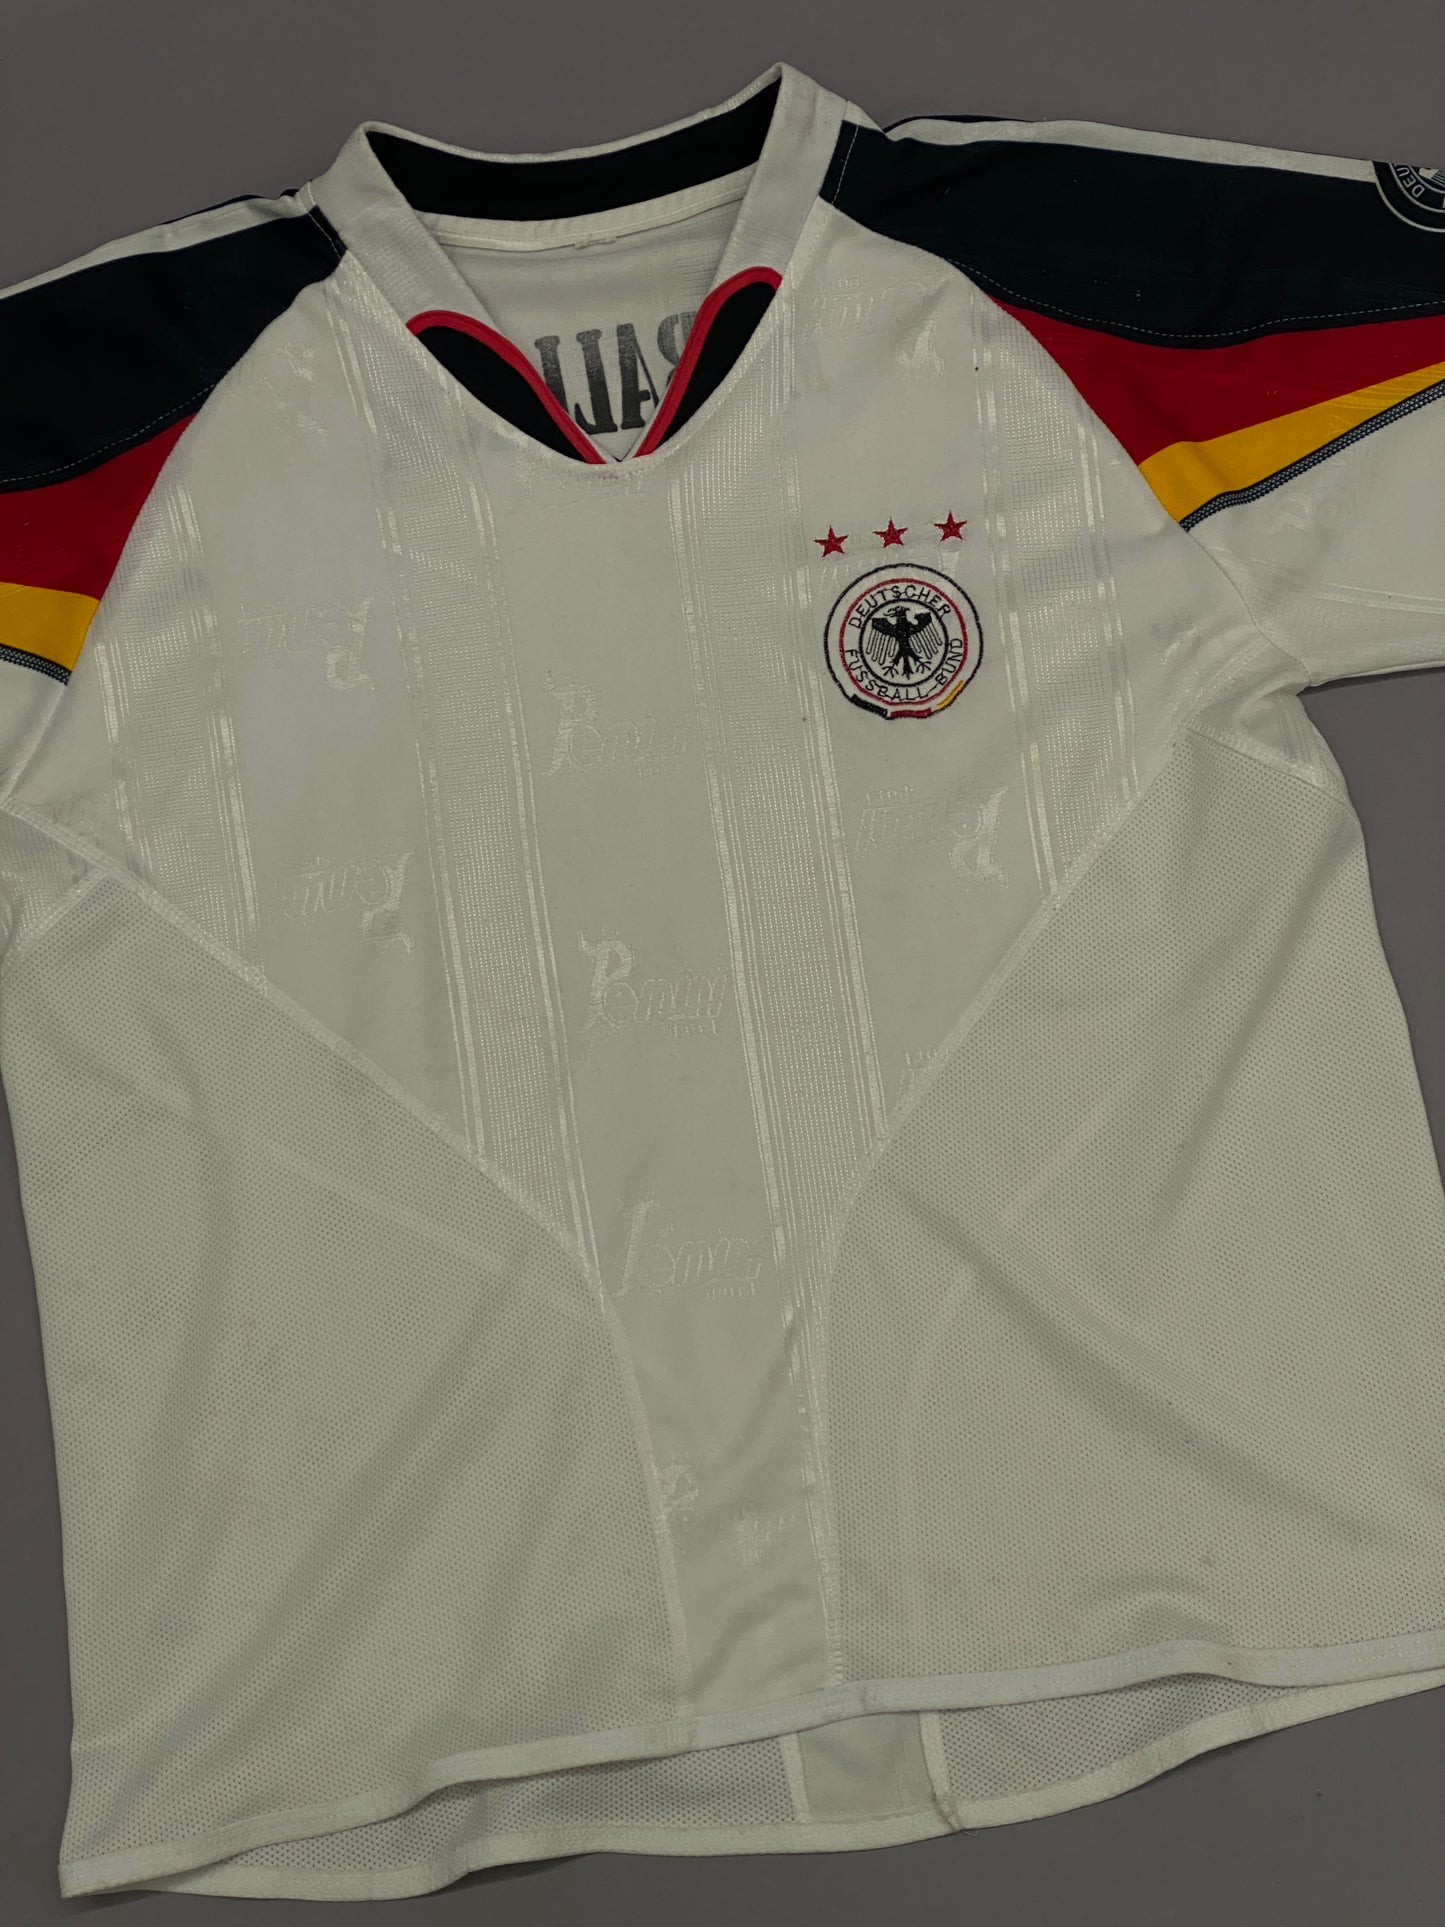 Jersey Alemania Euro Copa 2004 Vintage